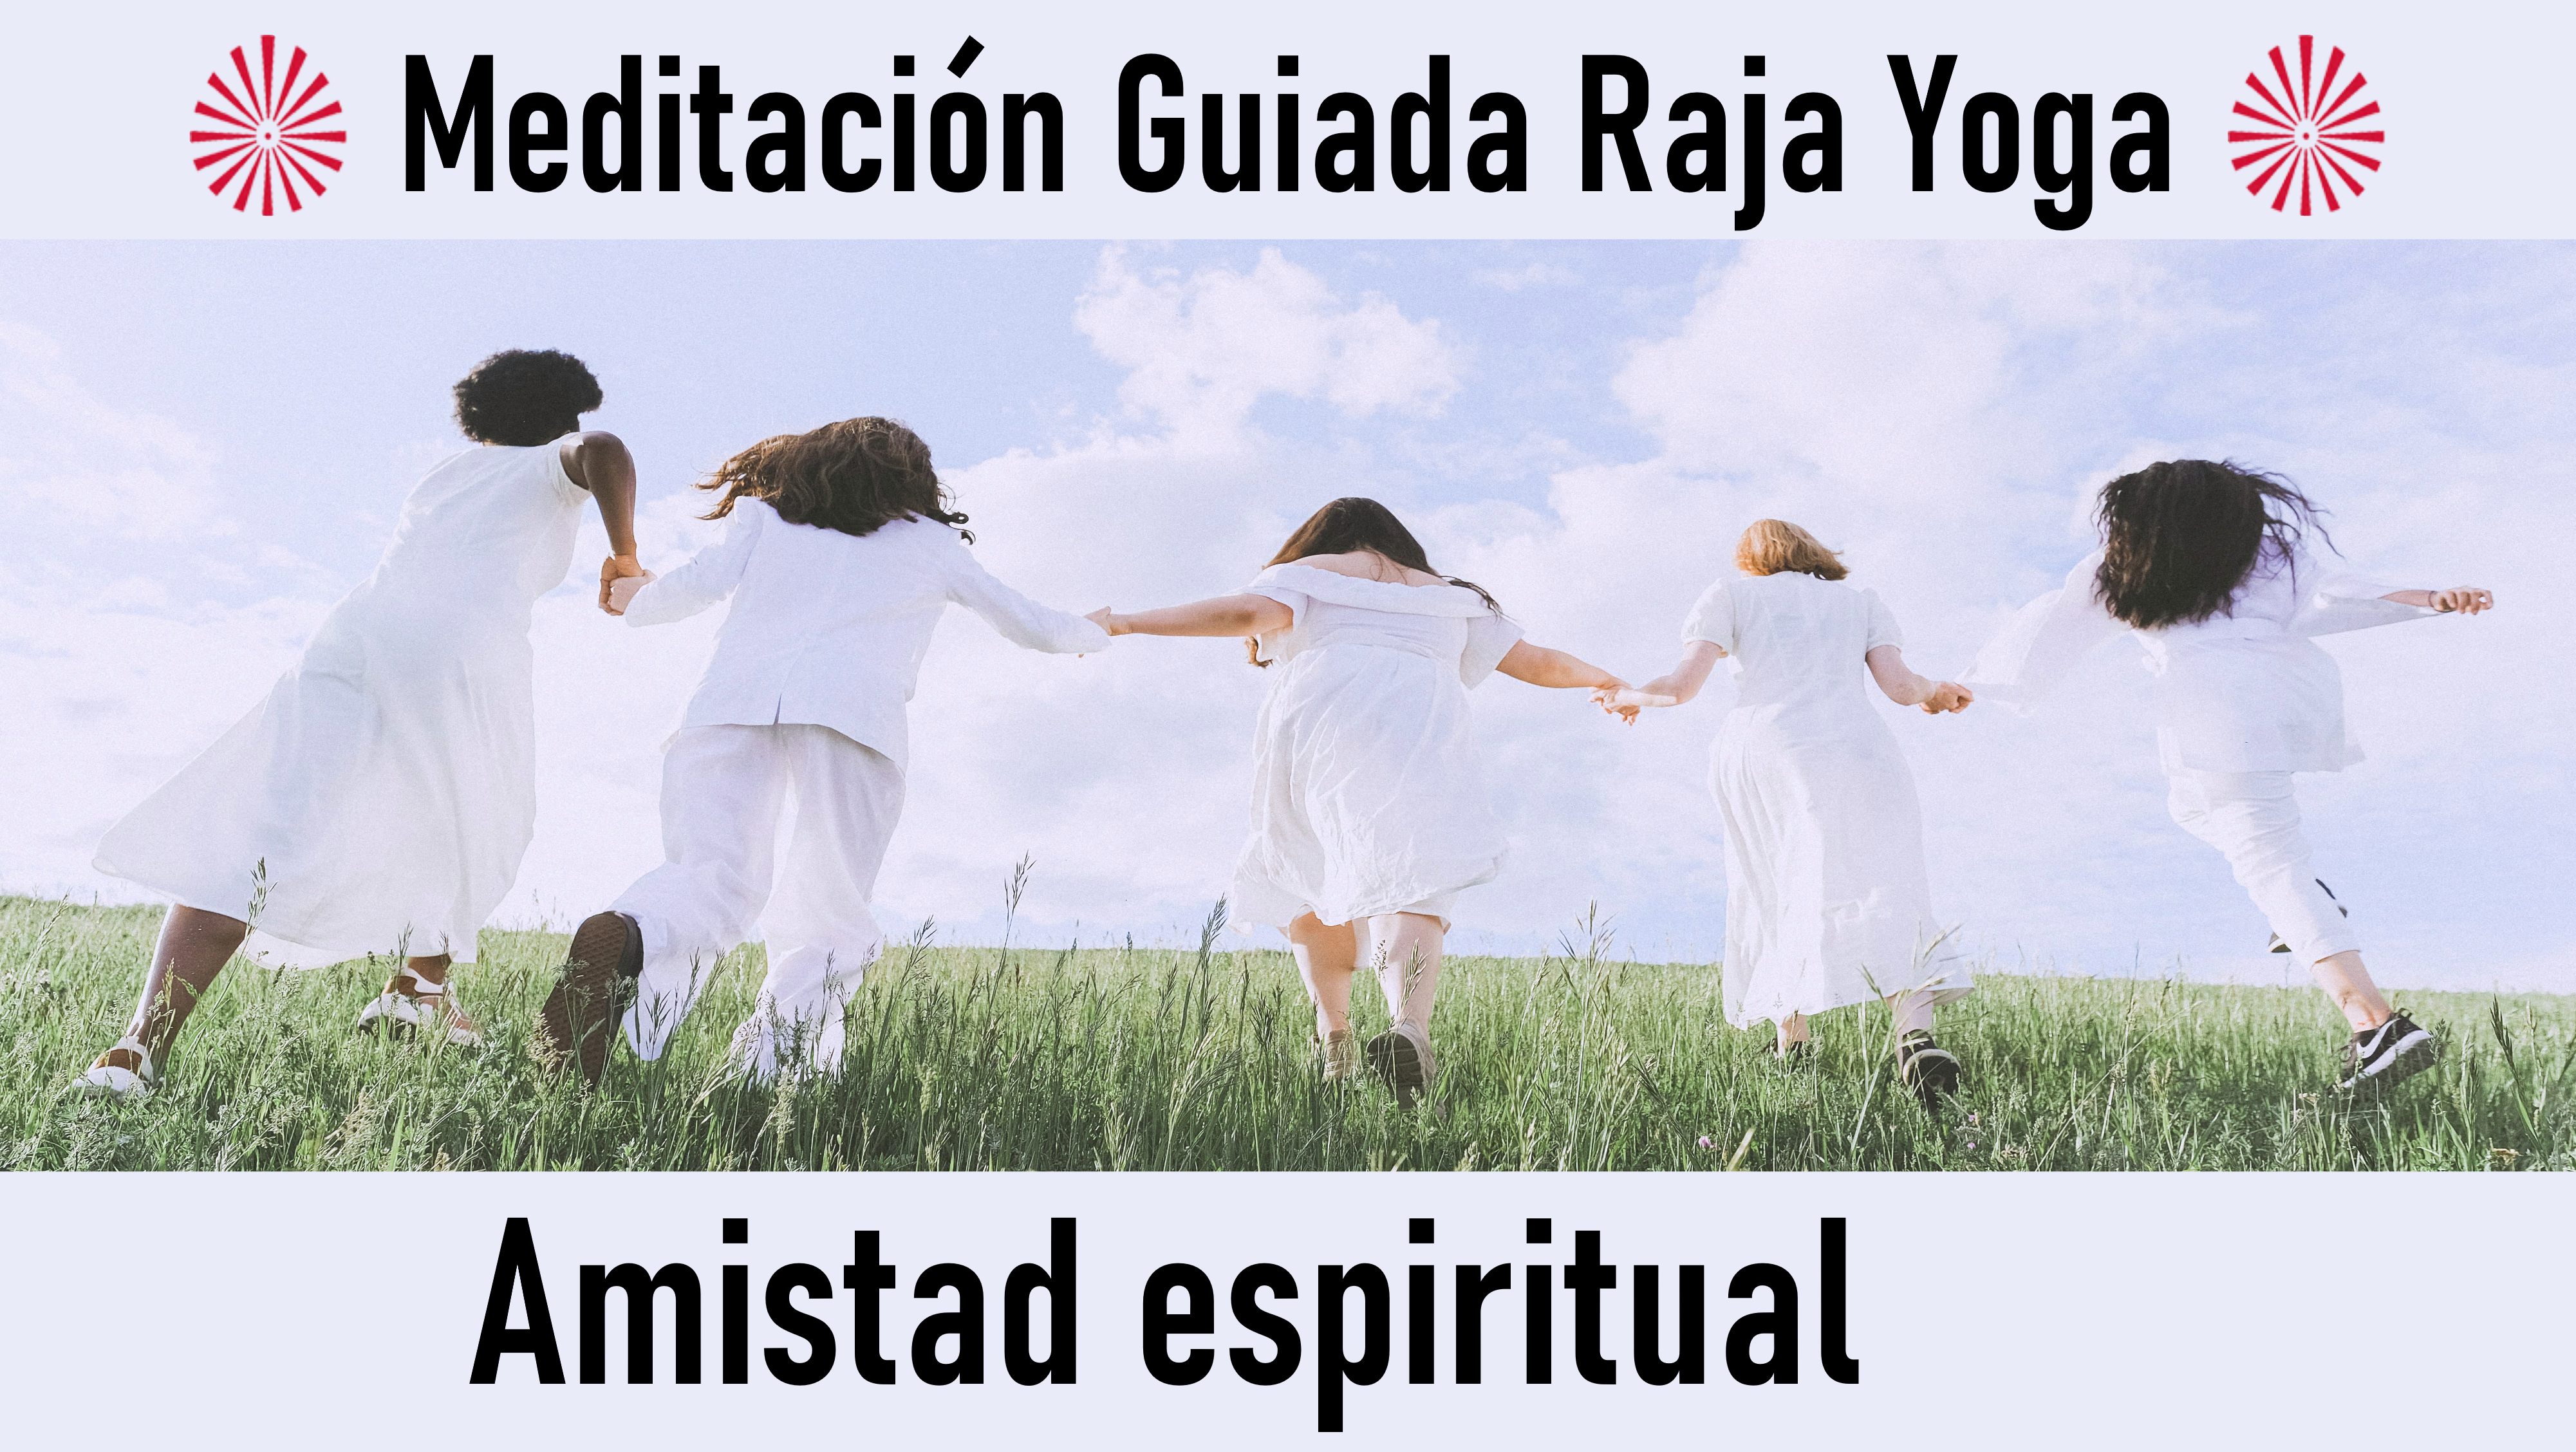 Meditación Raja Yoga: Amistad espiritual (8 Octubre 2020) On-line desde Madrid